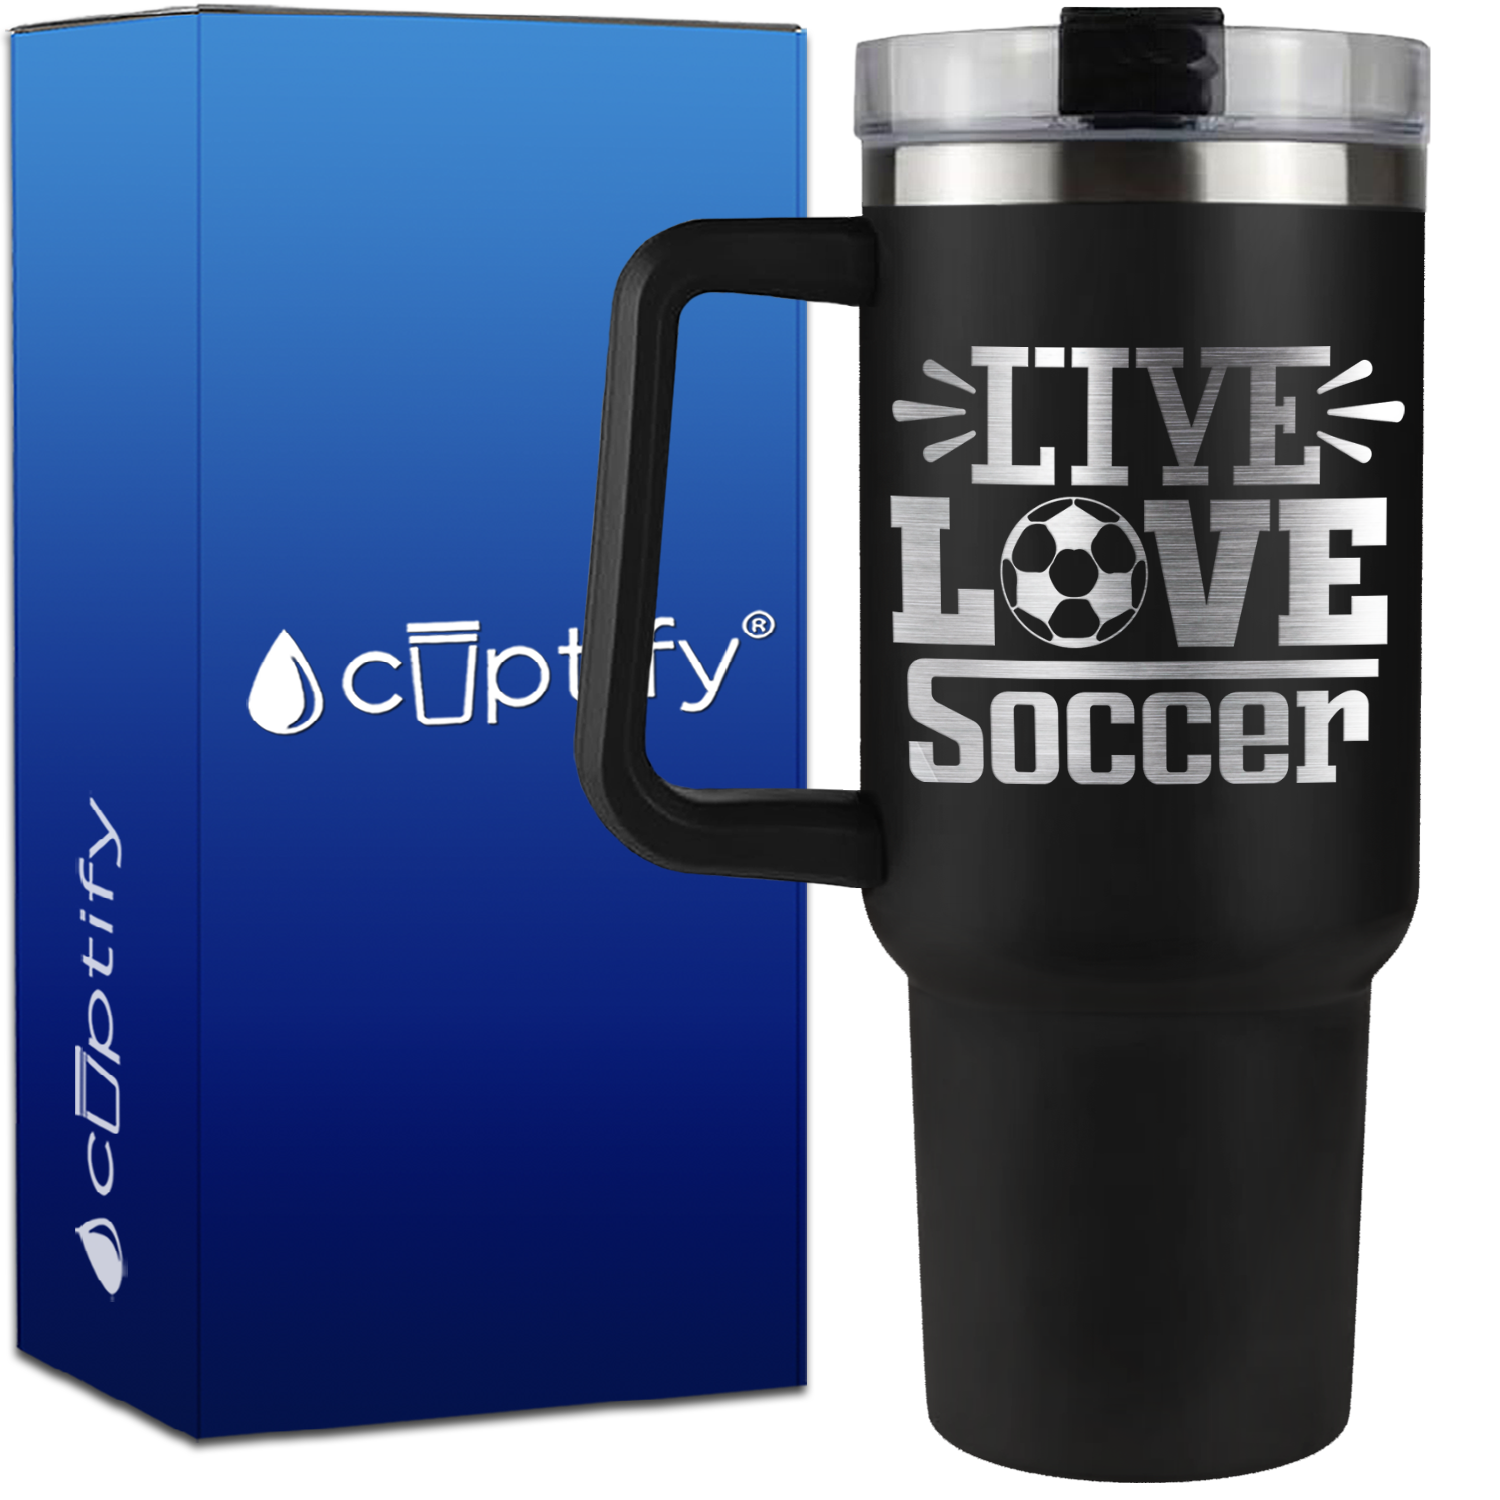 Live Love Soccer on 40oz Soccer Traveler Mug